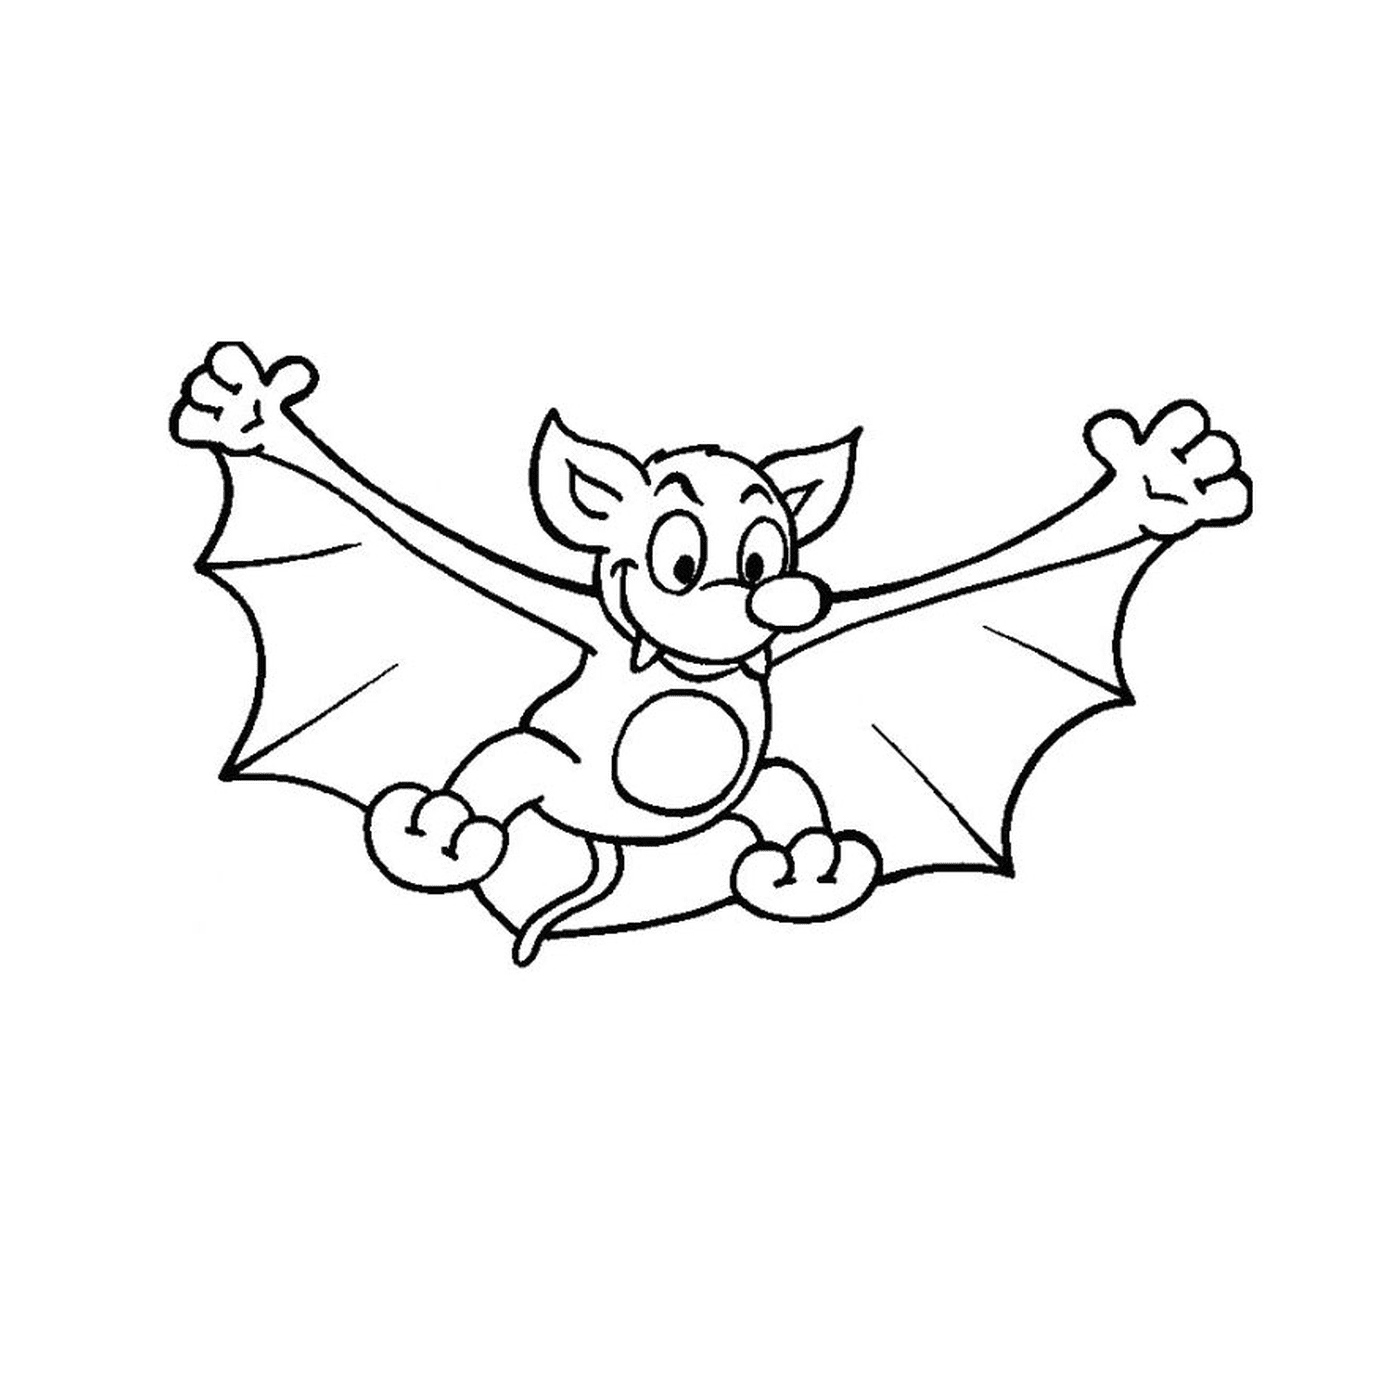  Bat voando no céu 